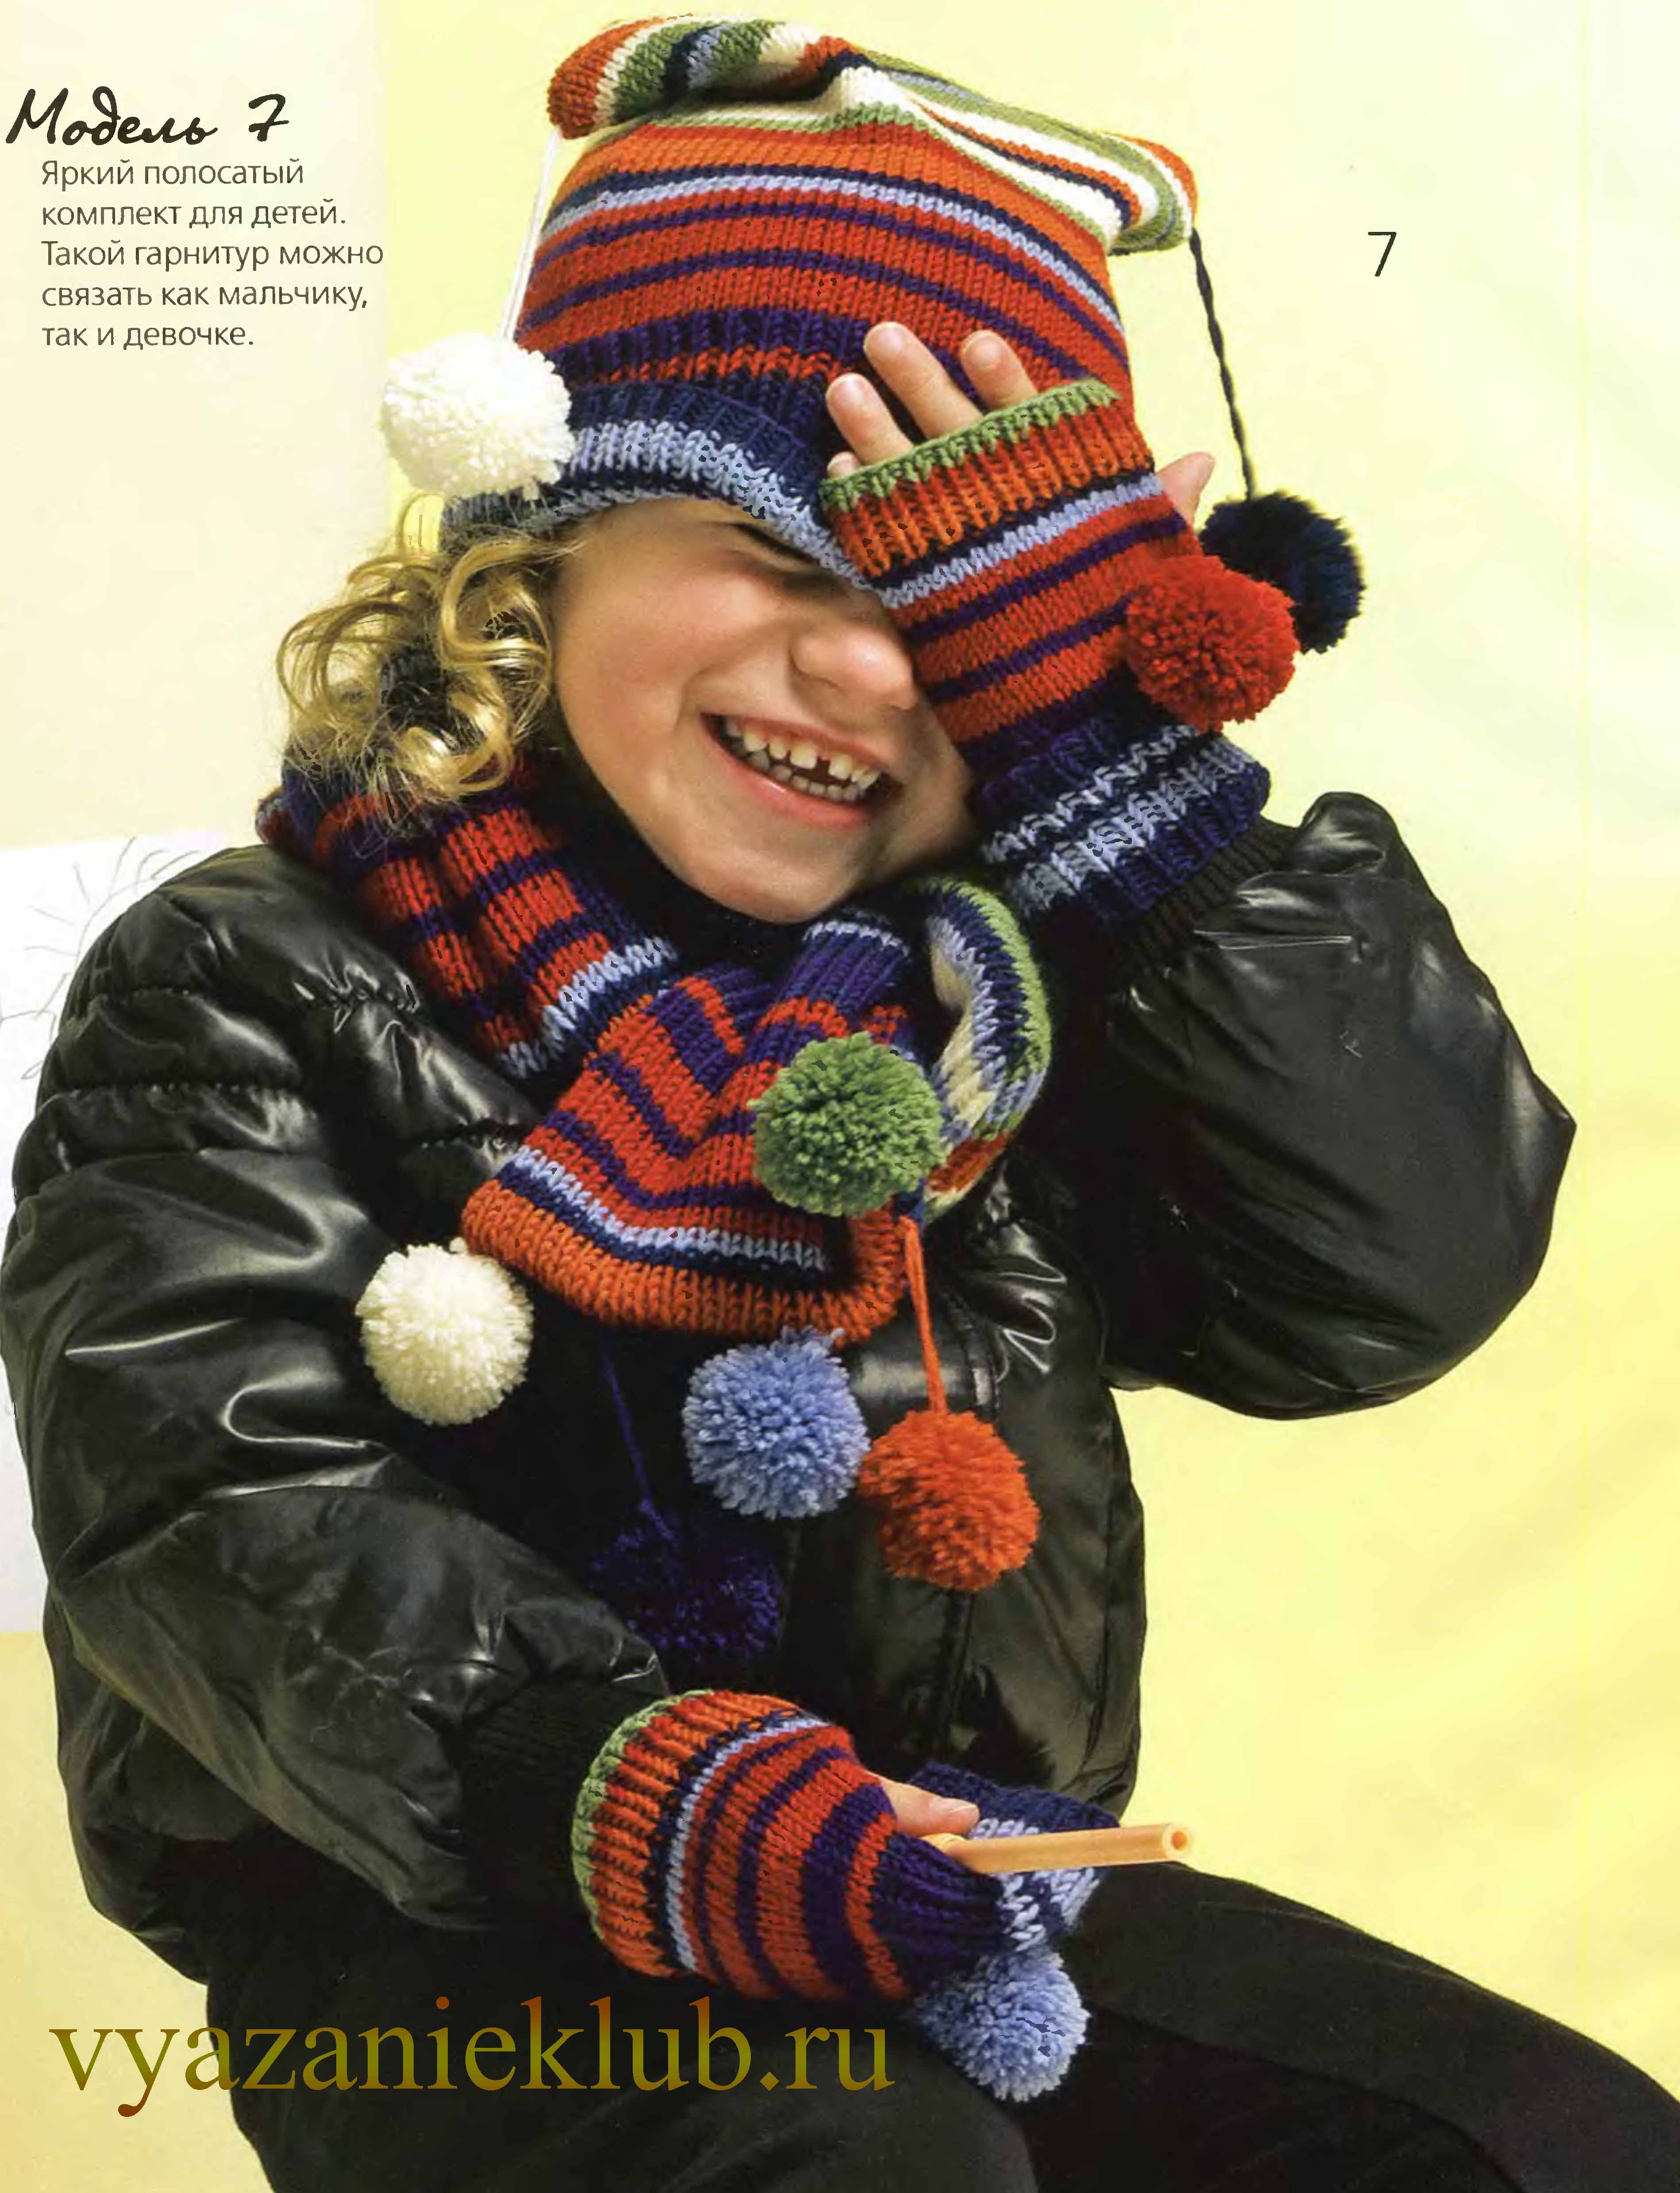 Шапка и шарф спицами для детей: описание вязания комплектов, видео мк